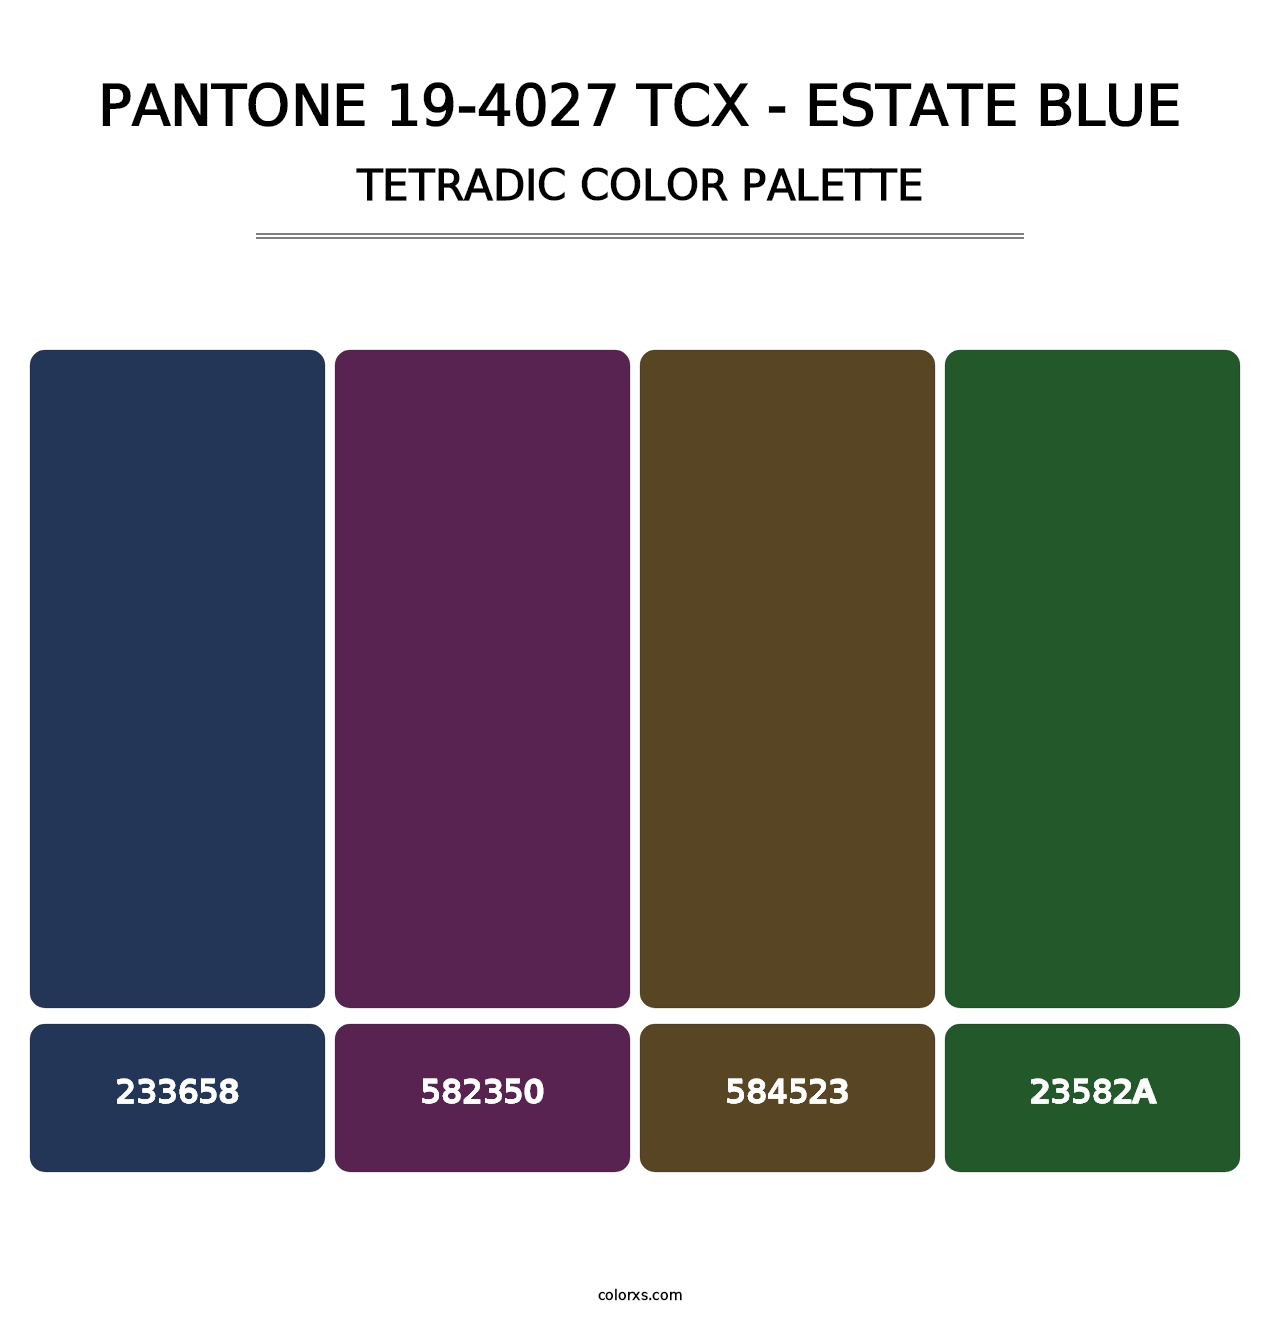 PANTONE 19-4027 TCX - Estate Blue - Tetradic Color Palette